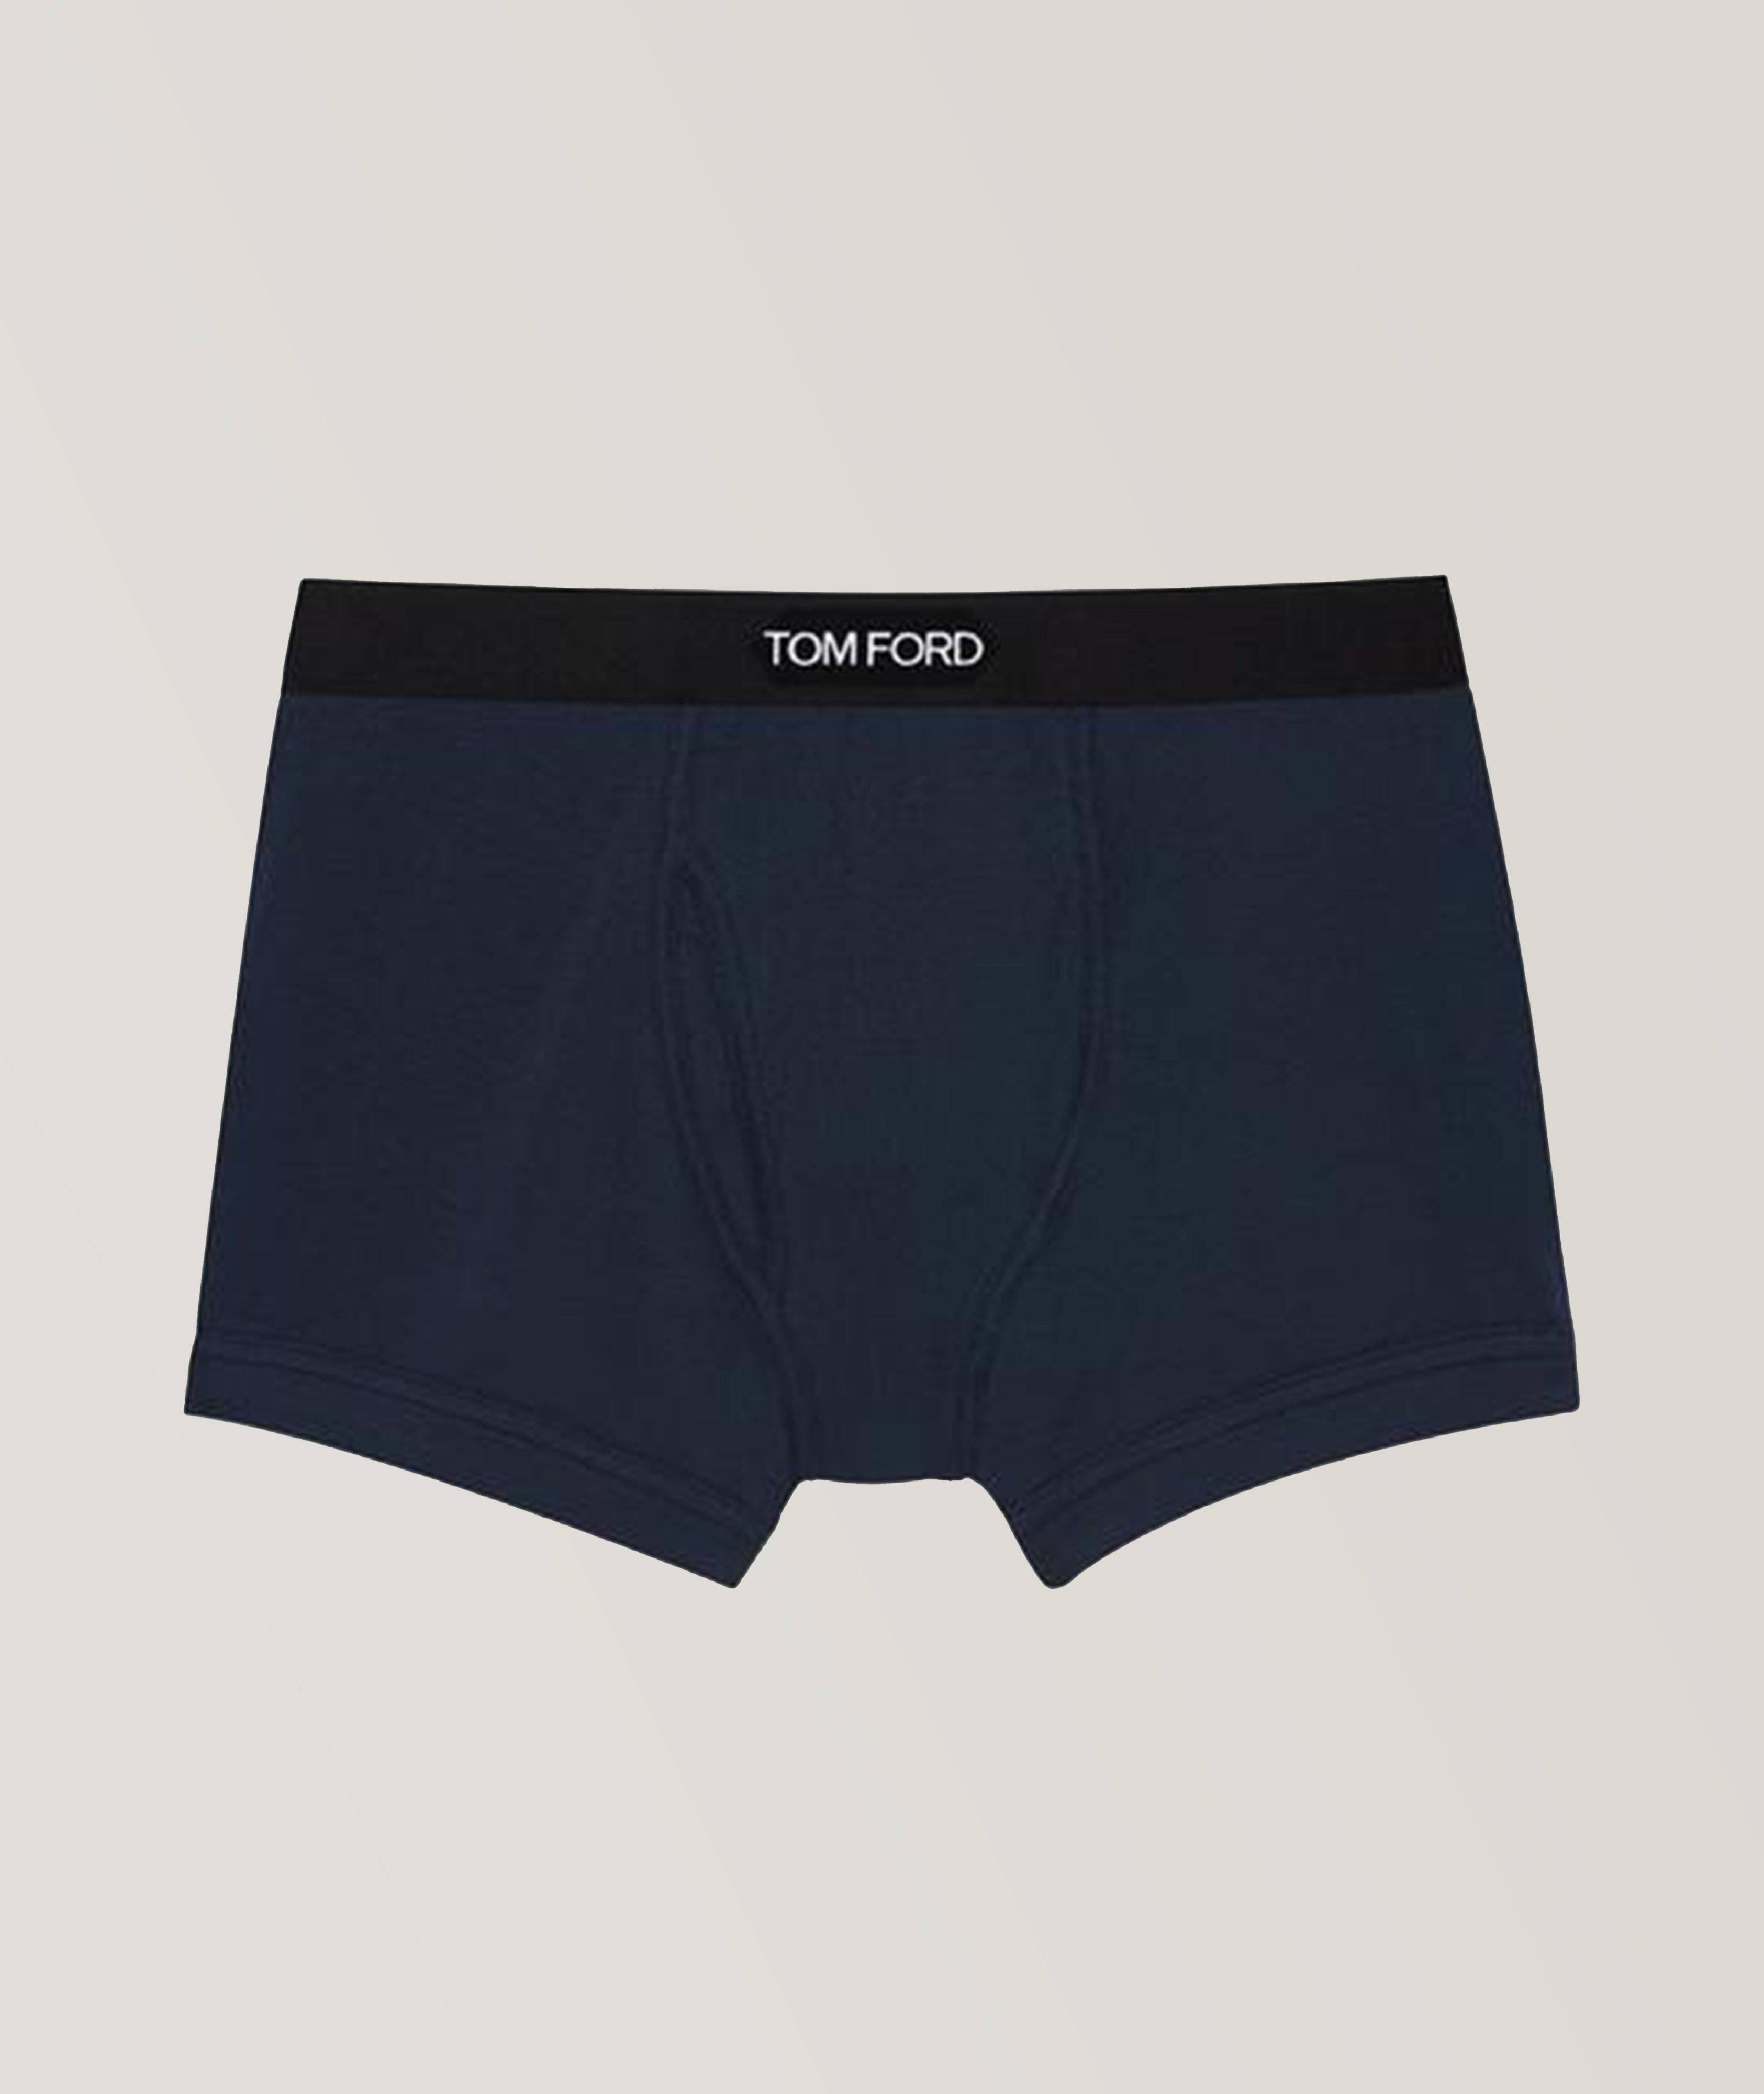 TOM FORD Jersey Cotton Boxer Briefs | Underwear | Harry Rosen